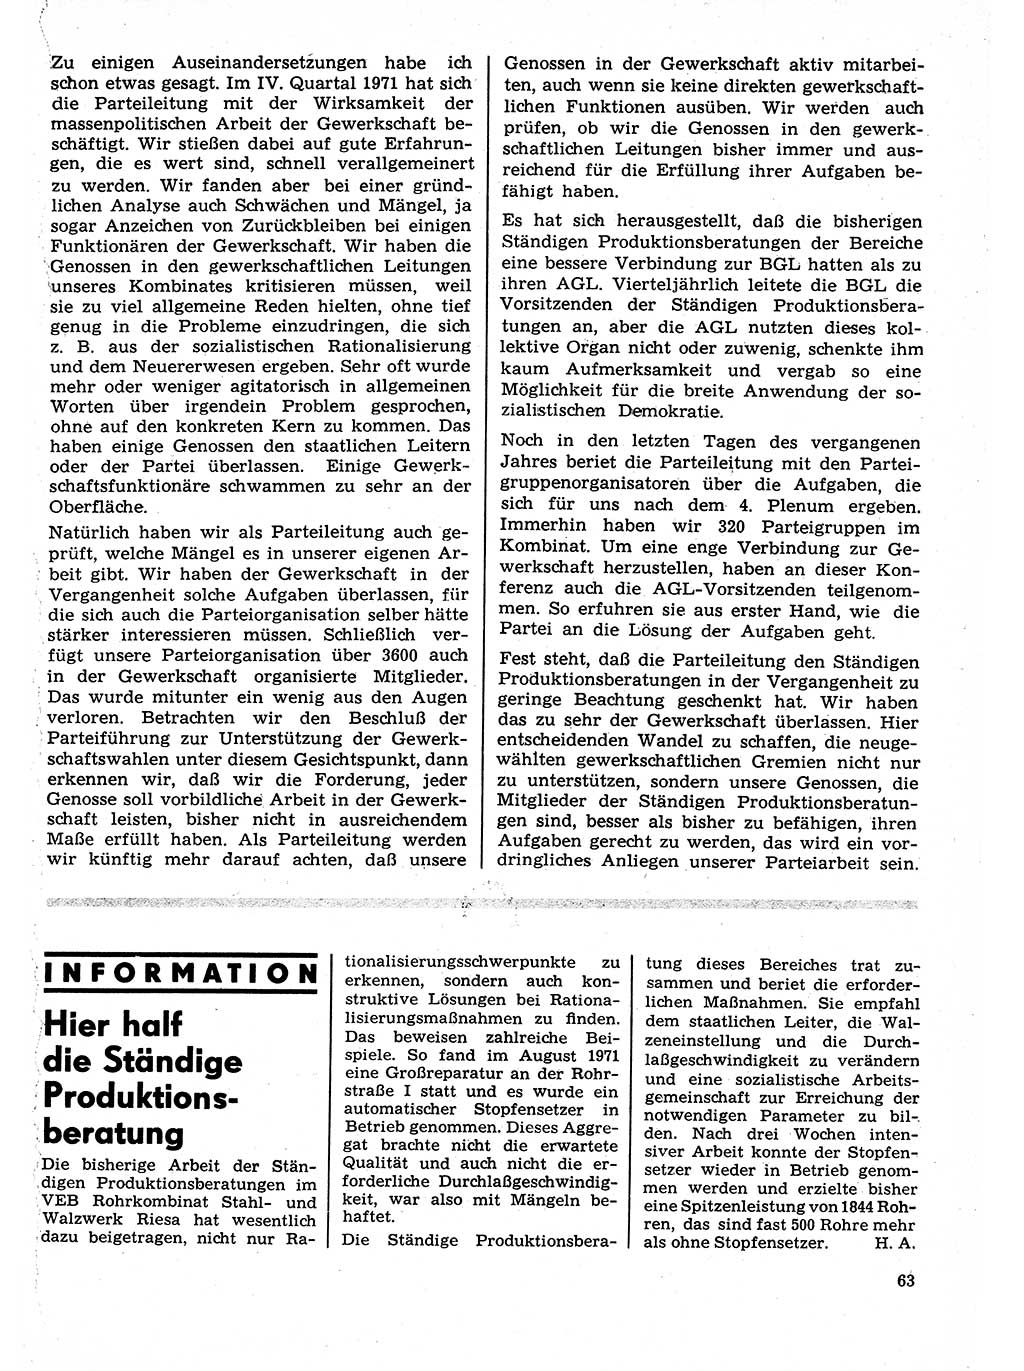 Neuer Weg (NW), Organ des Zentralkomitees (ZK) der SED (Sozialistische Einheitspartei Deutschlands) für Fragen des Parteilebens, 27. Jahrgang [Deutsche Demokratische Republik (DDR)] 1972, Seite 63 (NW ZK SED DDR 1972, S. 63)